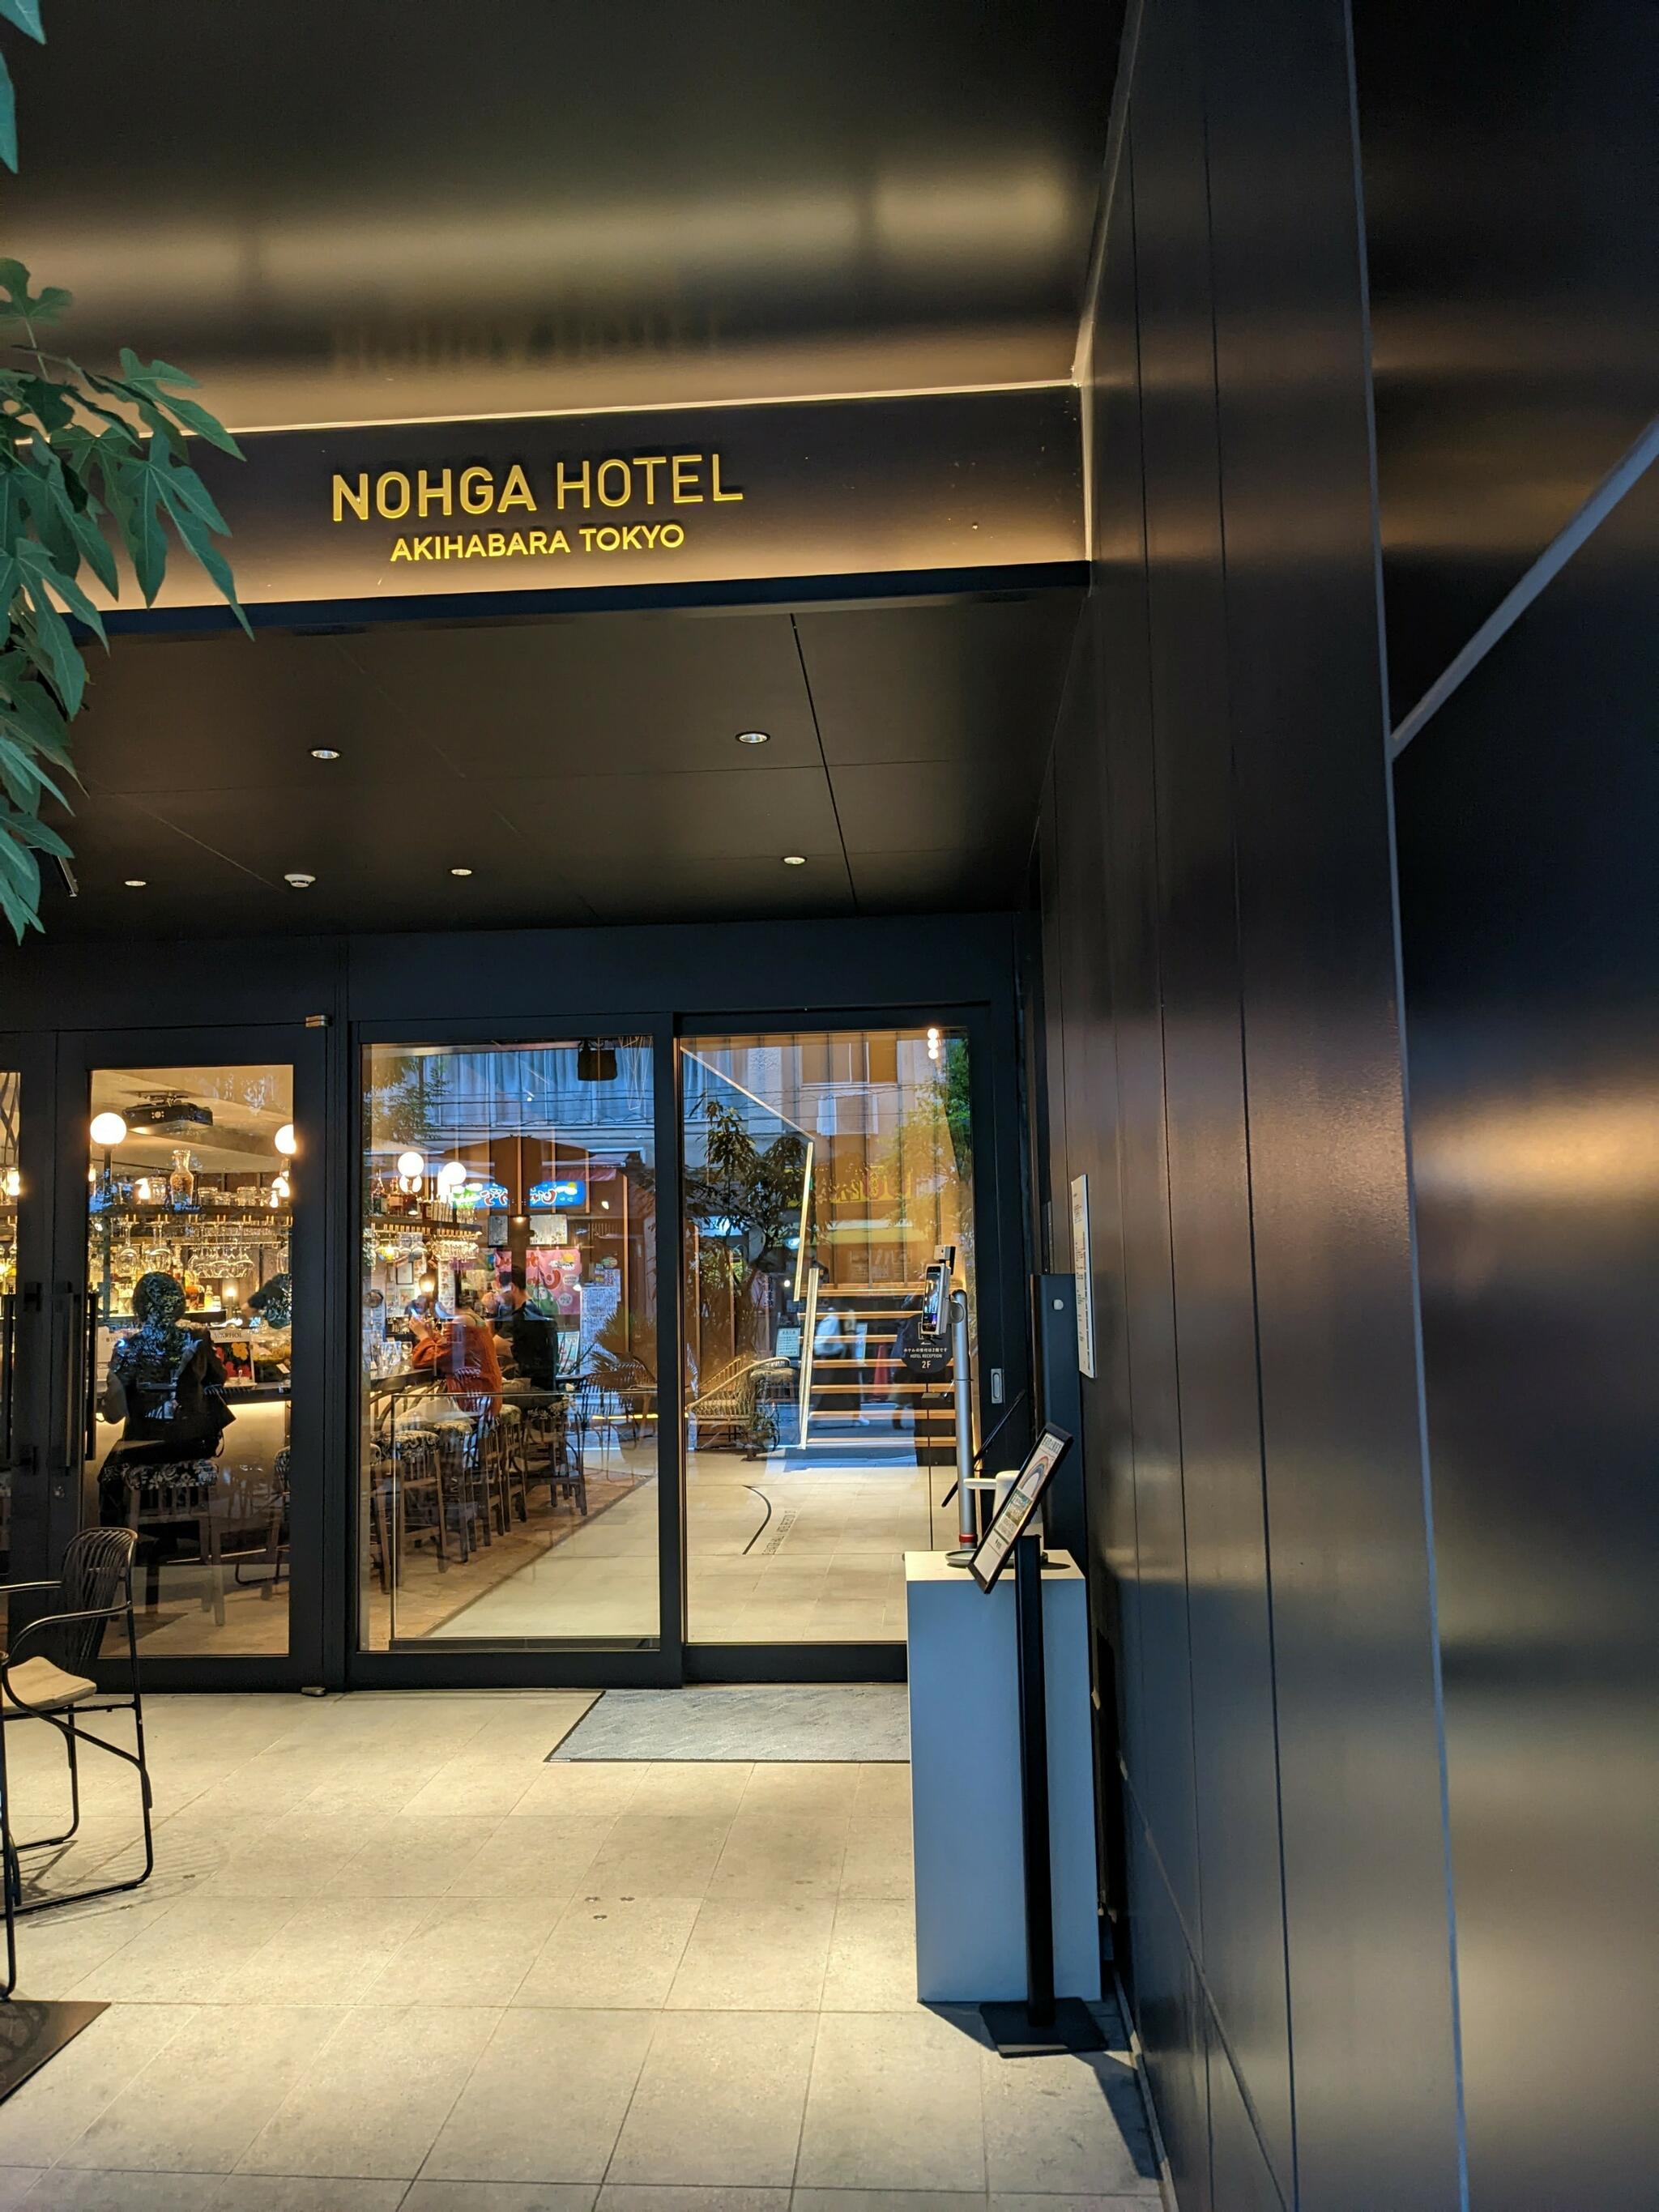 ノーガホテル 秋葉原 東京 (NOHGA HOTEL)の代表写真1